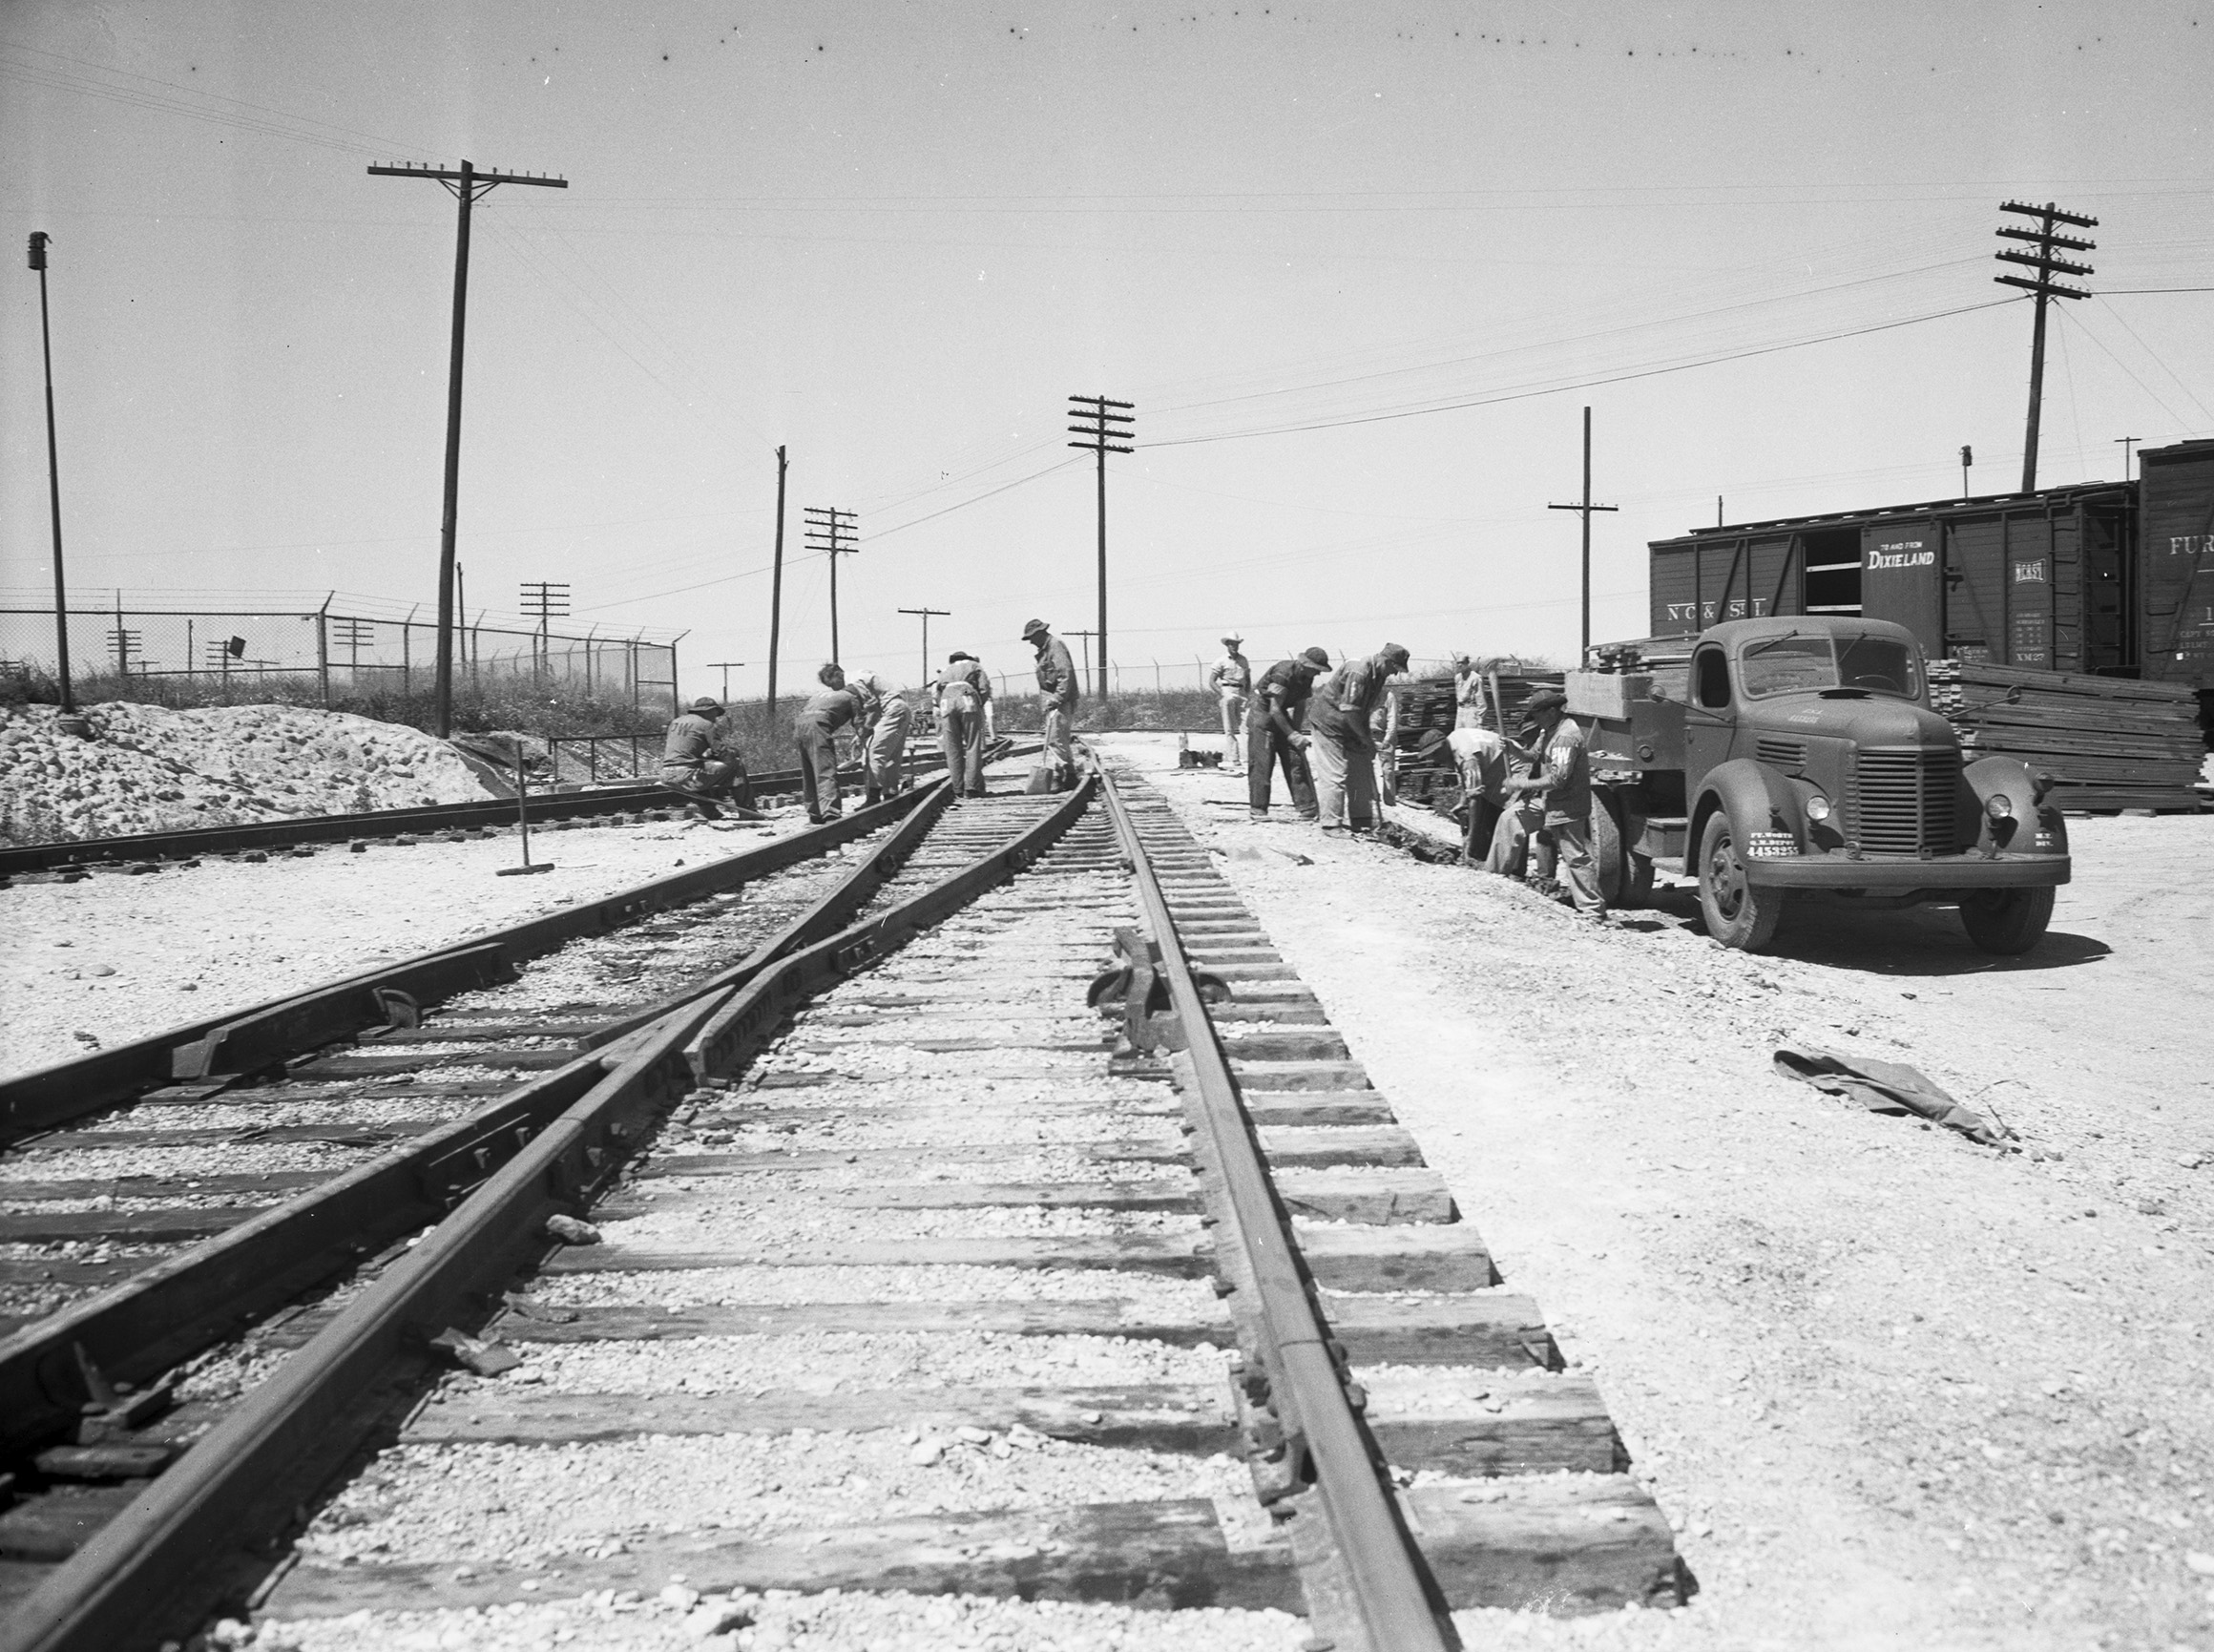 Fort Worth Quartermaster Depot, German prisoner of war workers at the Fort Worth Quartermaster Depot, ca. 1945. Source: Fort Worth Star-Telegram Collection.